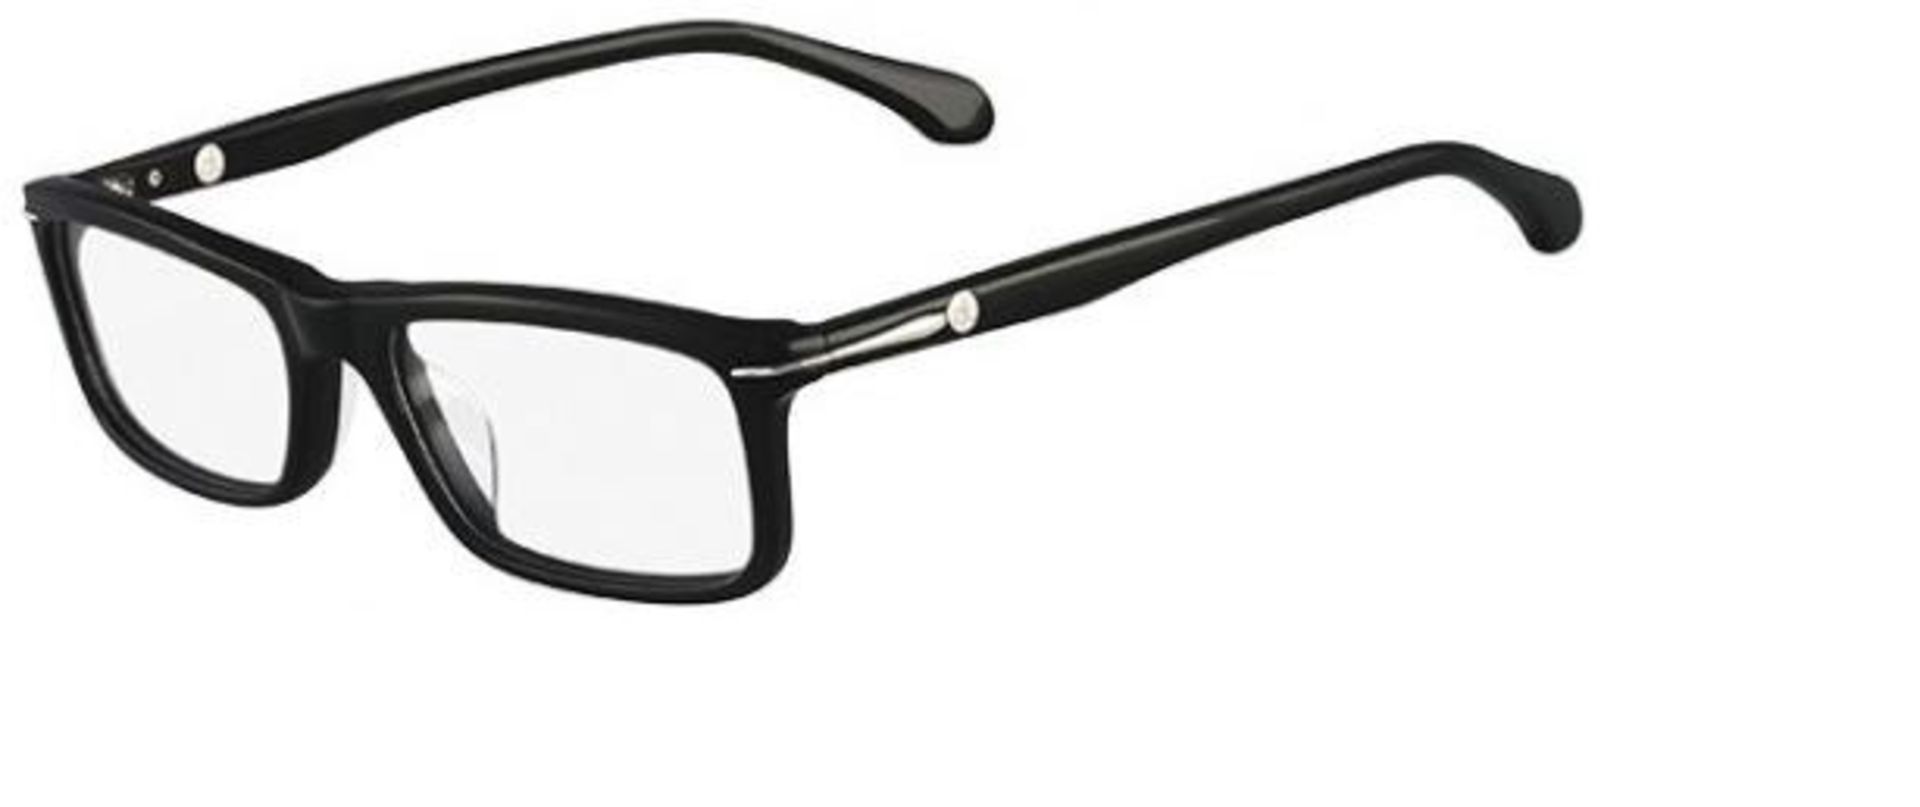 15 x Calvin Klein Glasses Frames Model: CK5772 Colour Black